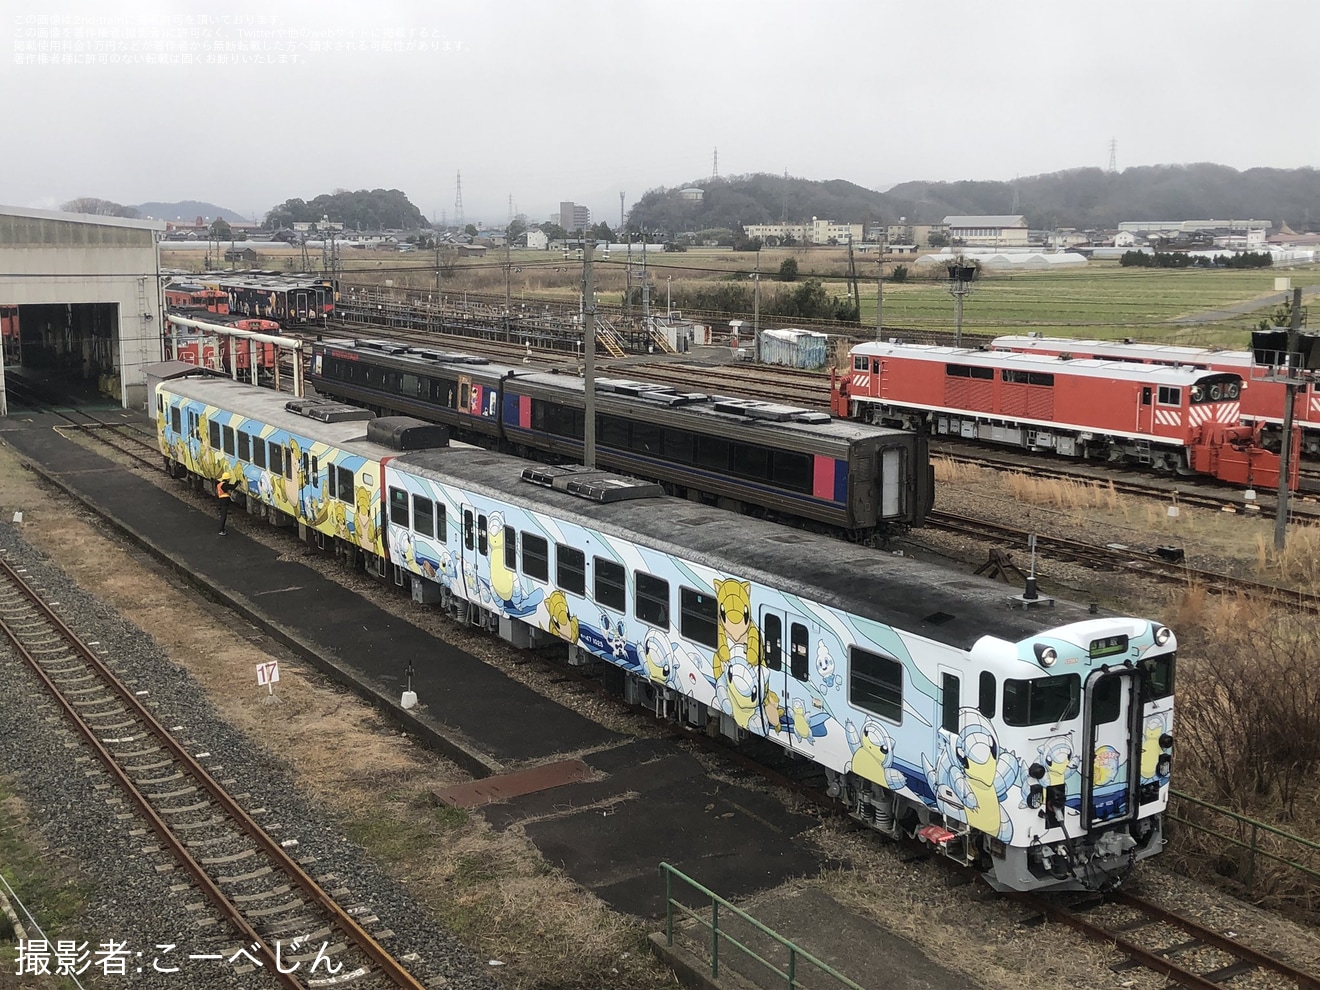 【JR西】キハ47-1025+キハ47-146が「とっとりサンド列車 」ラッピングにの拡大写真